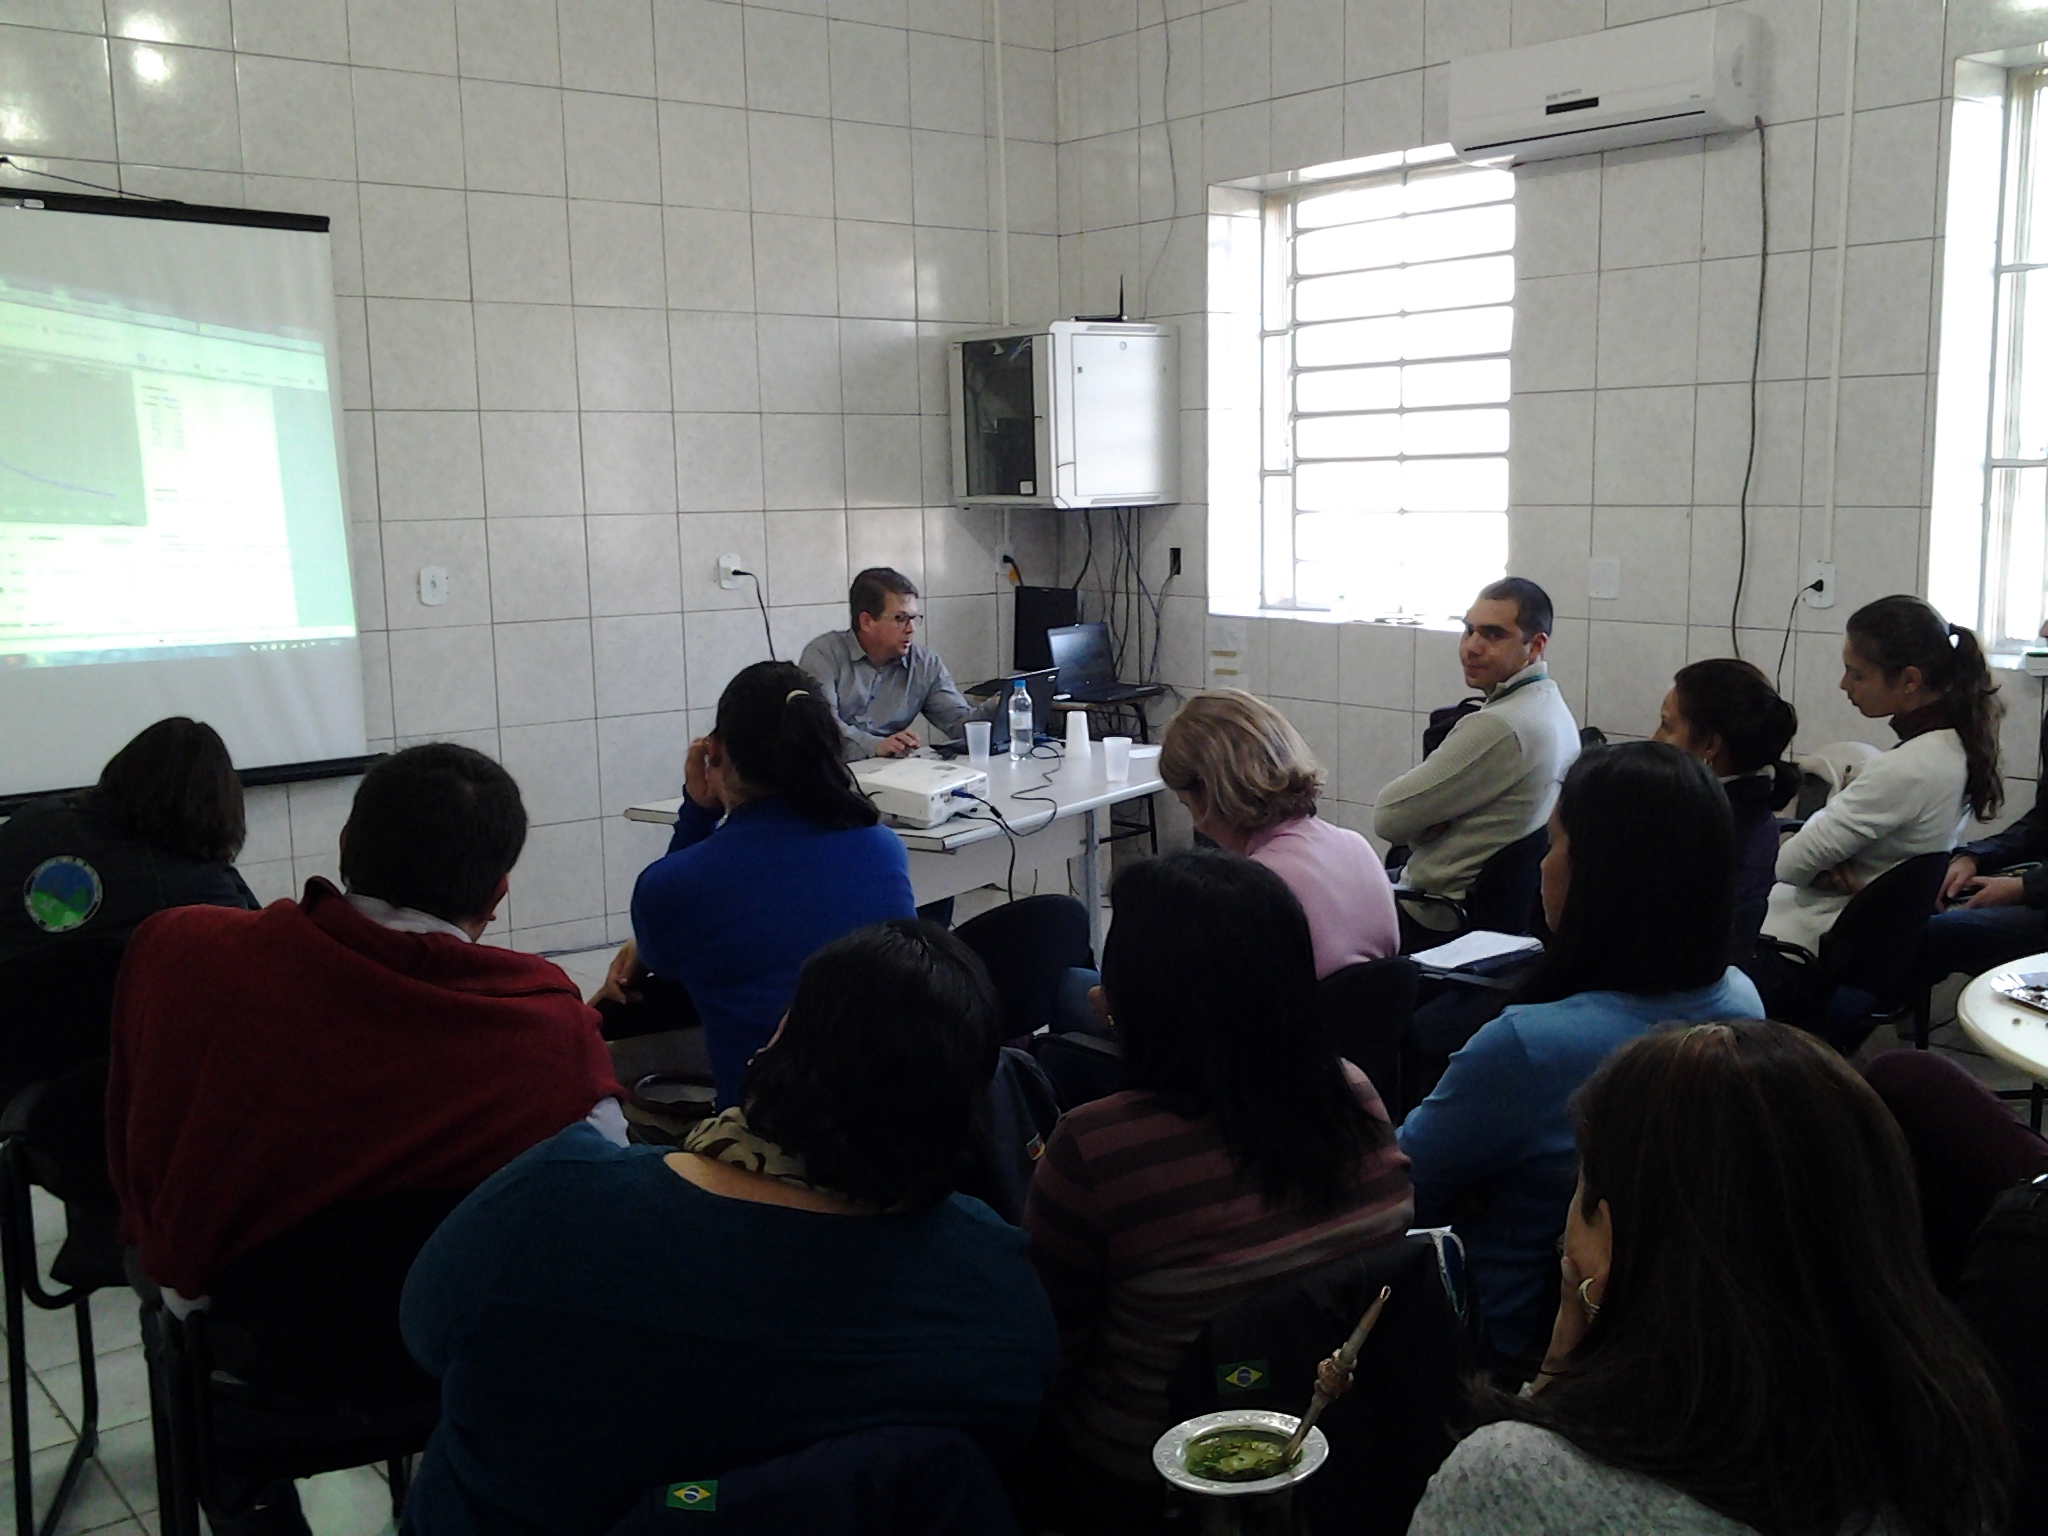 Grupo de docentes e discentes reunidos em sala de aula com o ministrante, o professor André Ferreira